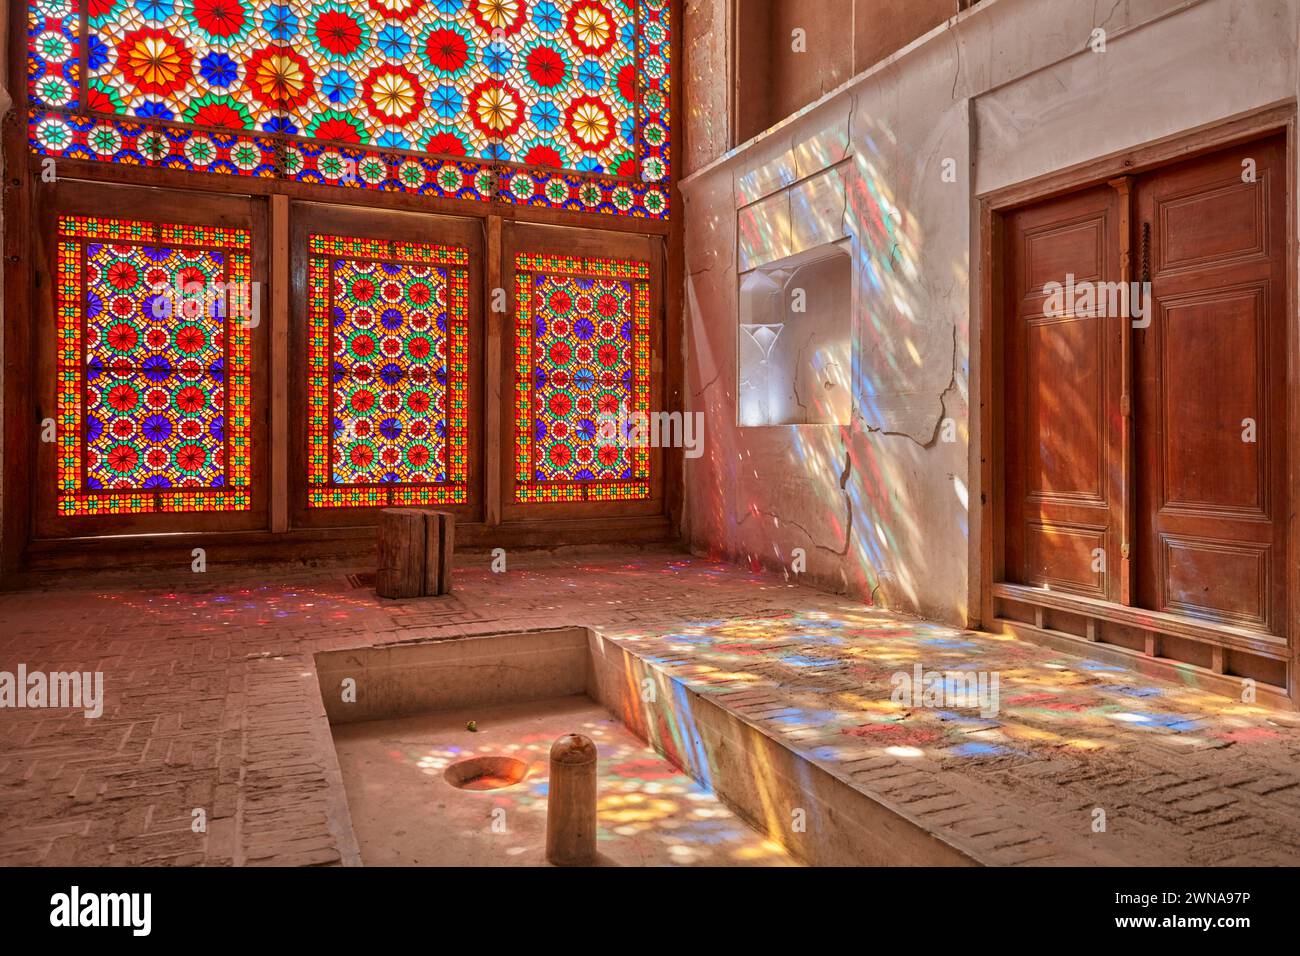 Le vitrail orné projette des éclaboussures de lumière colorées sur le mur et le sol du pavillon. Jardin de Dowlatabad, Yazd, Iran. Banque D'Images